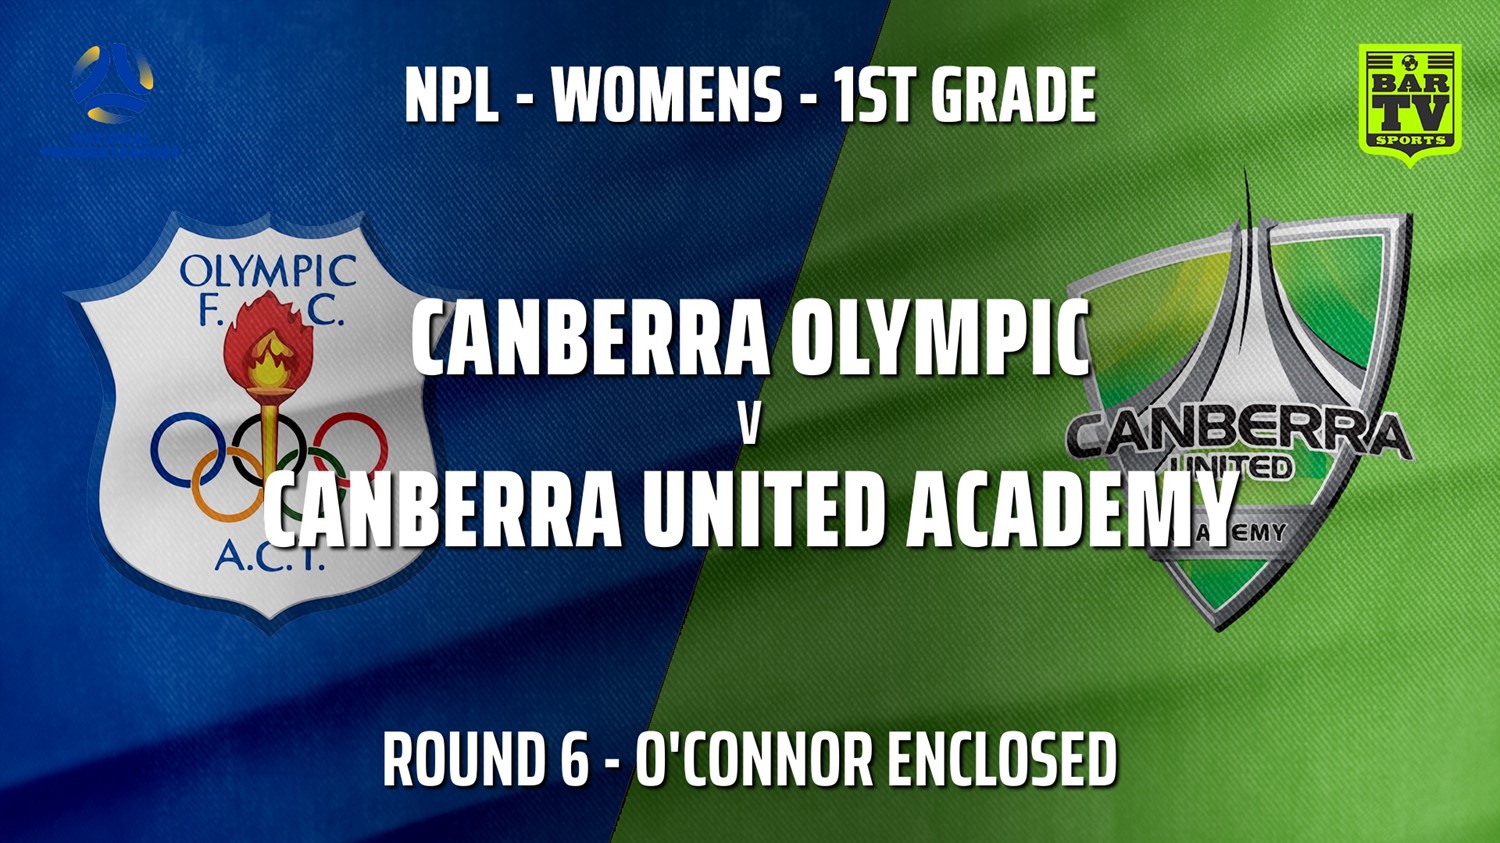 210516-NPLW - Capital Round 6 - Canberra Olympic FC (women) v Canberra United Academy Slate Image